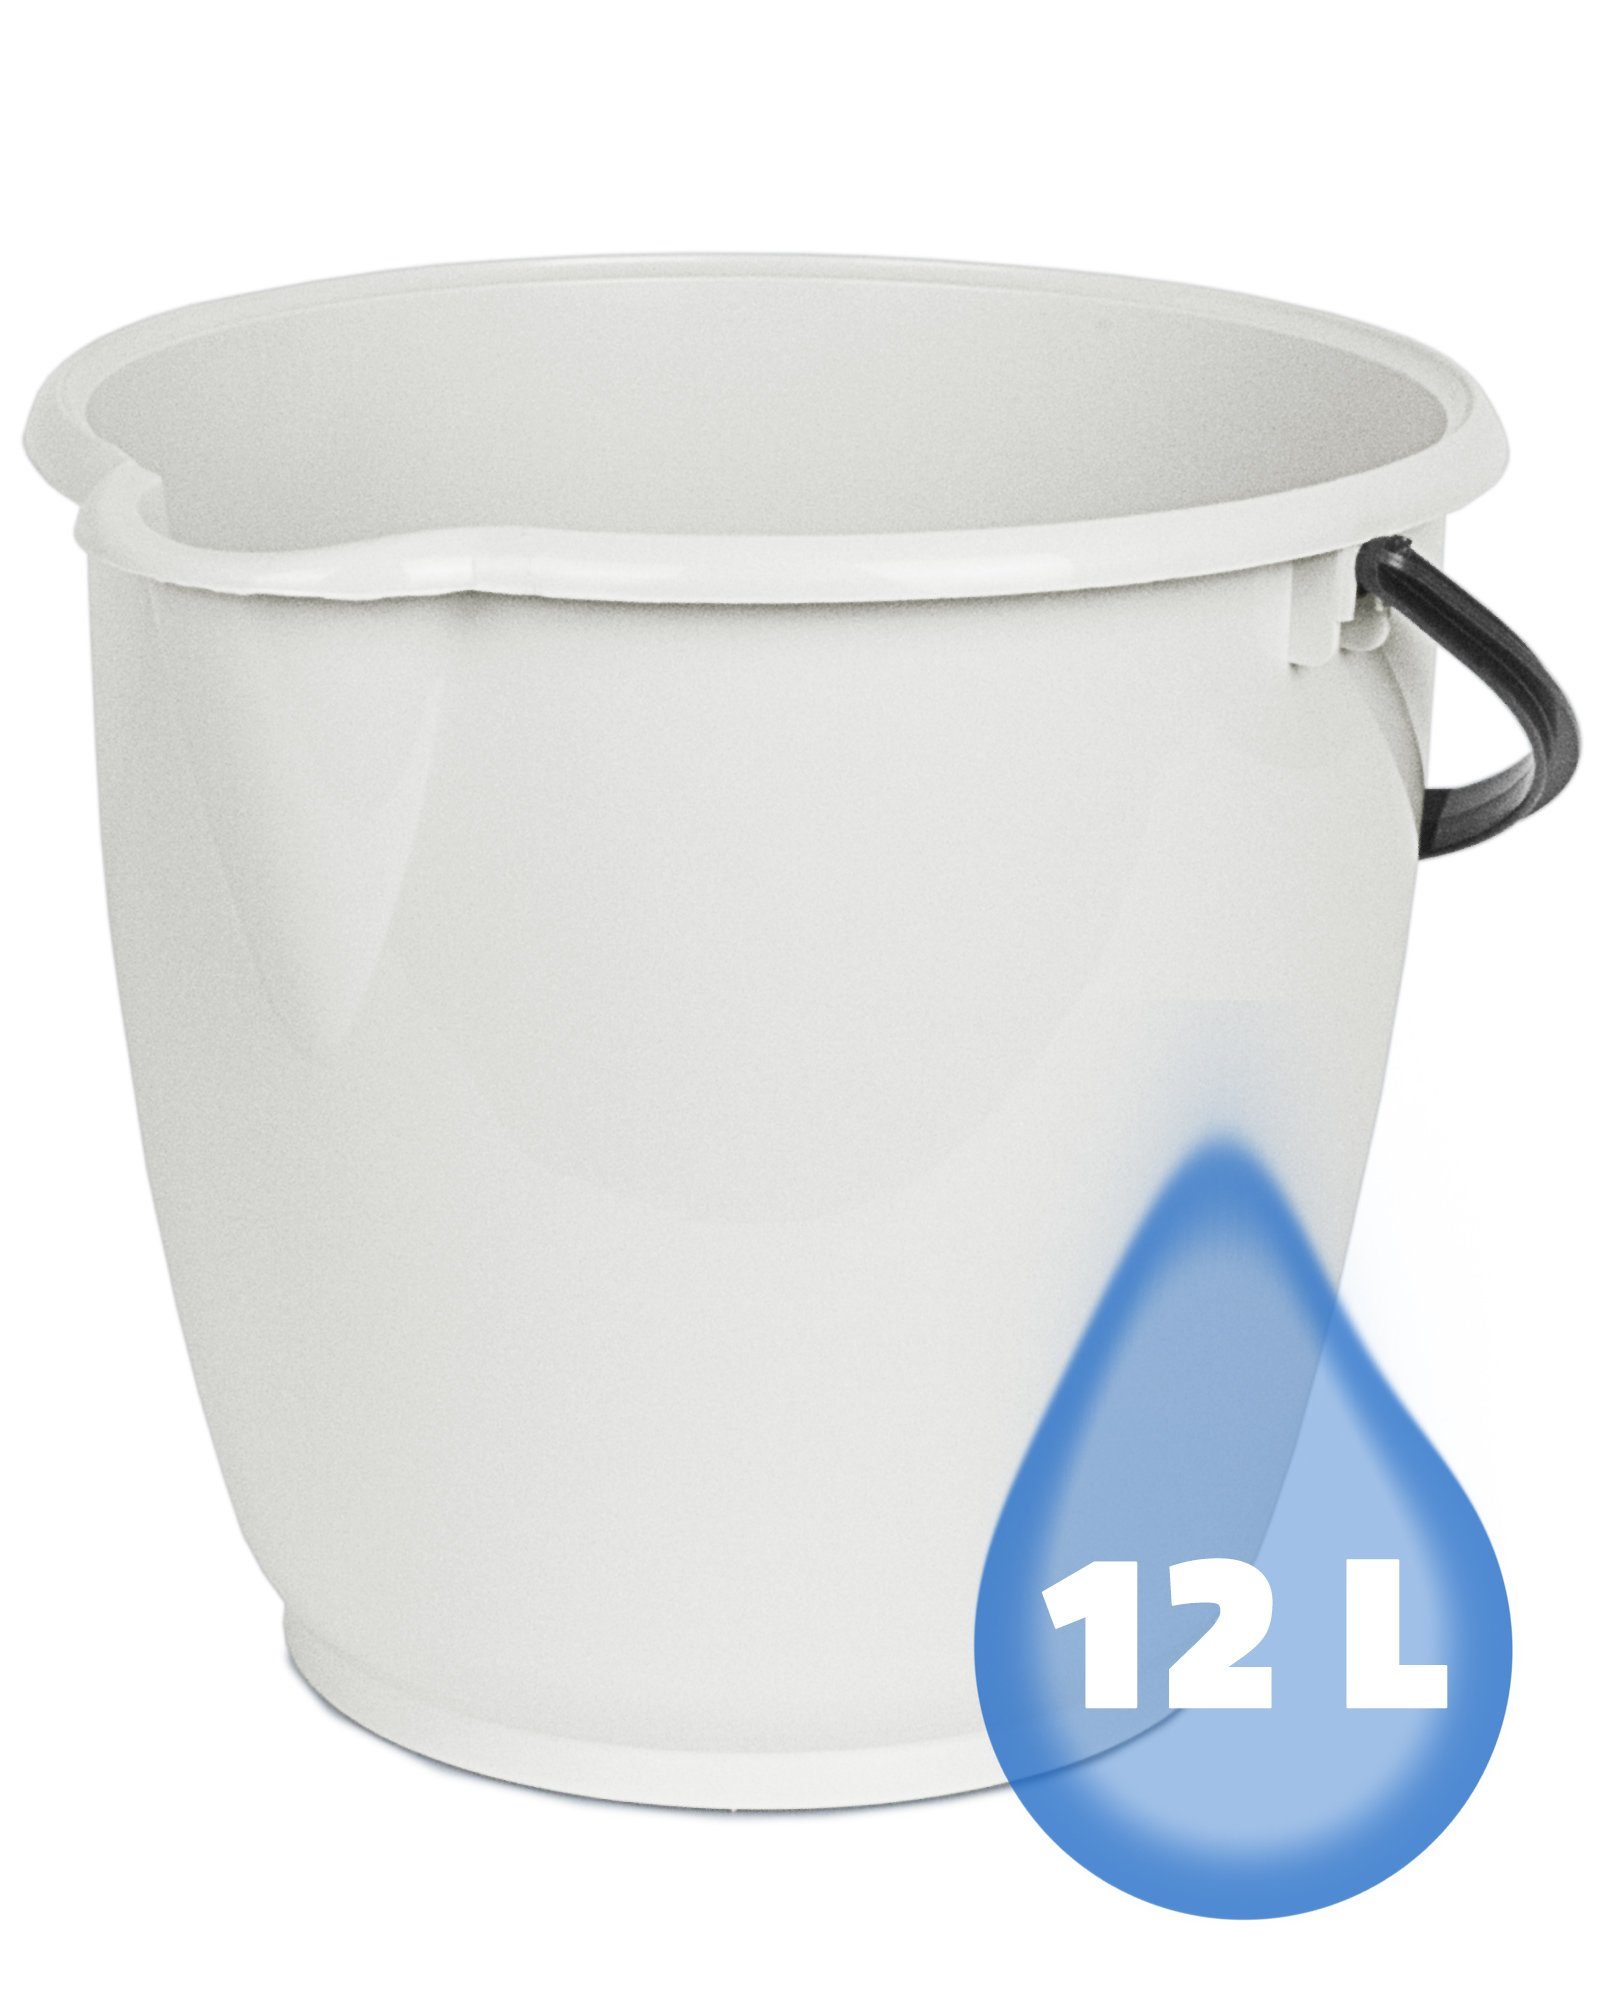 Haushaltseimer 12 mit Liter Ausguss grau Kunststoffbügel, & Plastikeimer ONDIS24 Putzeimer Füllstandsanzeige